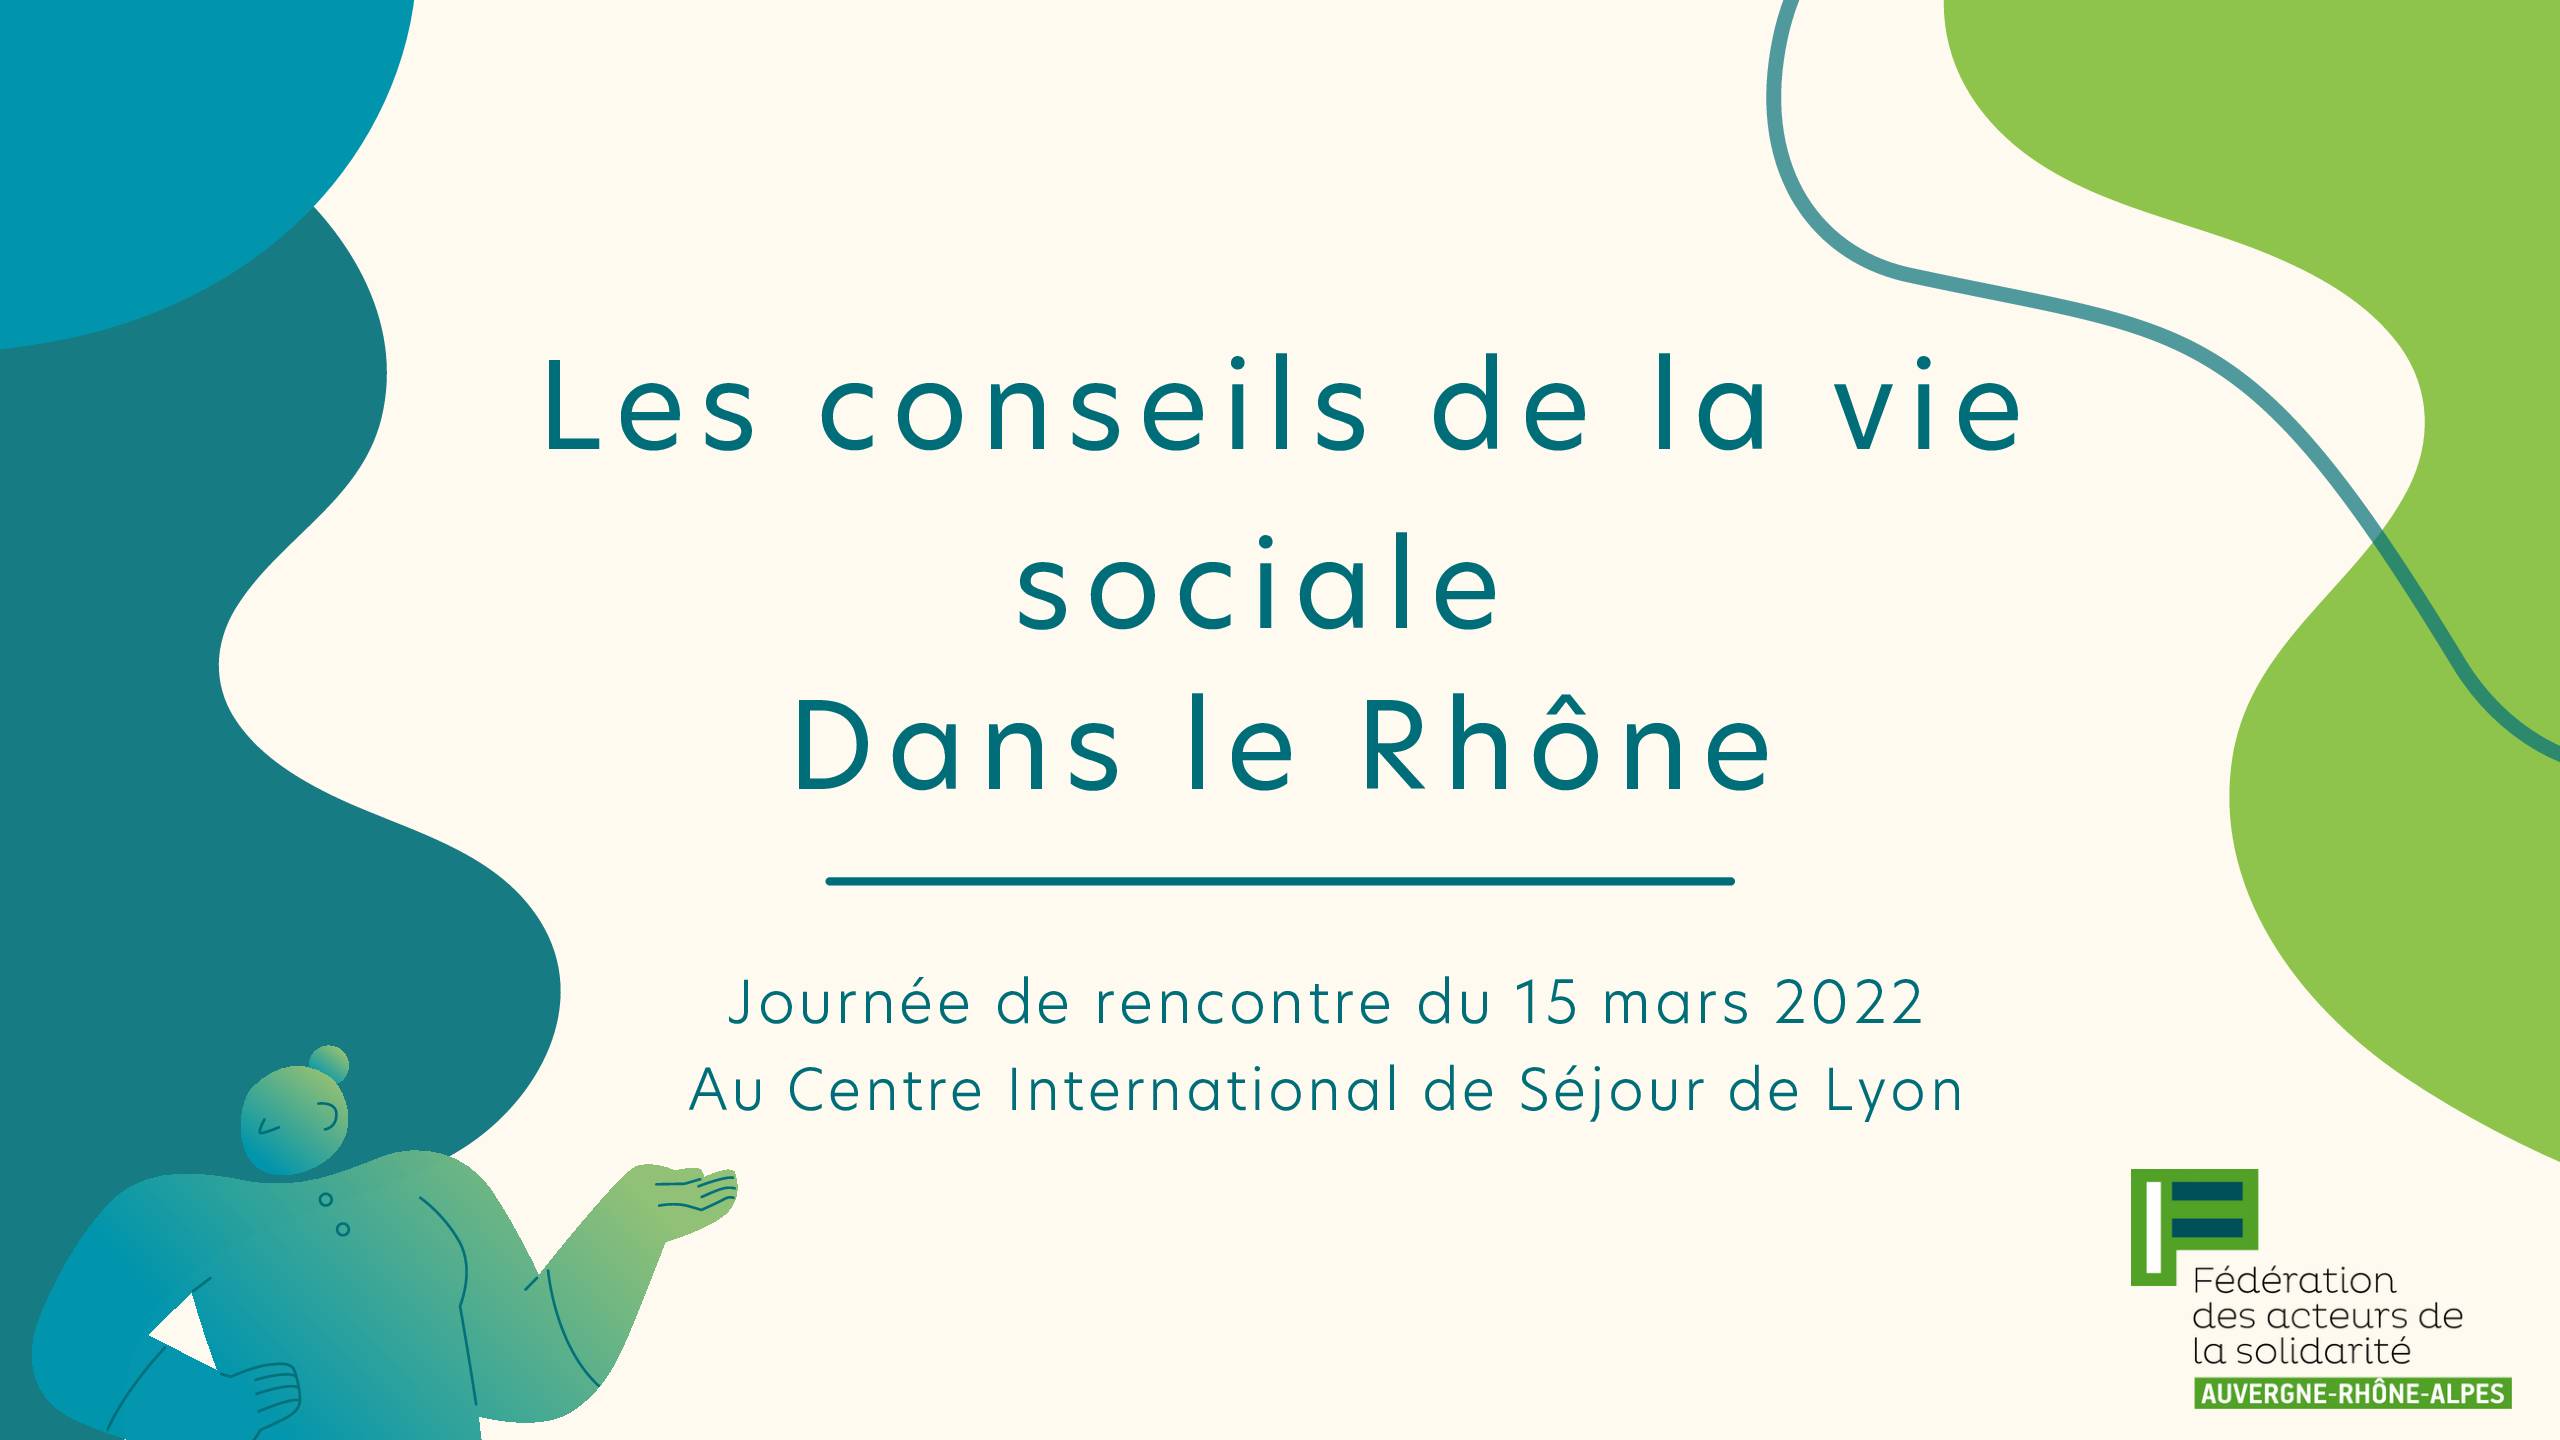 Compte-rendu de la journée sur les conseils de vie social Rhône - 15 mars 2022